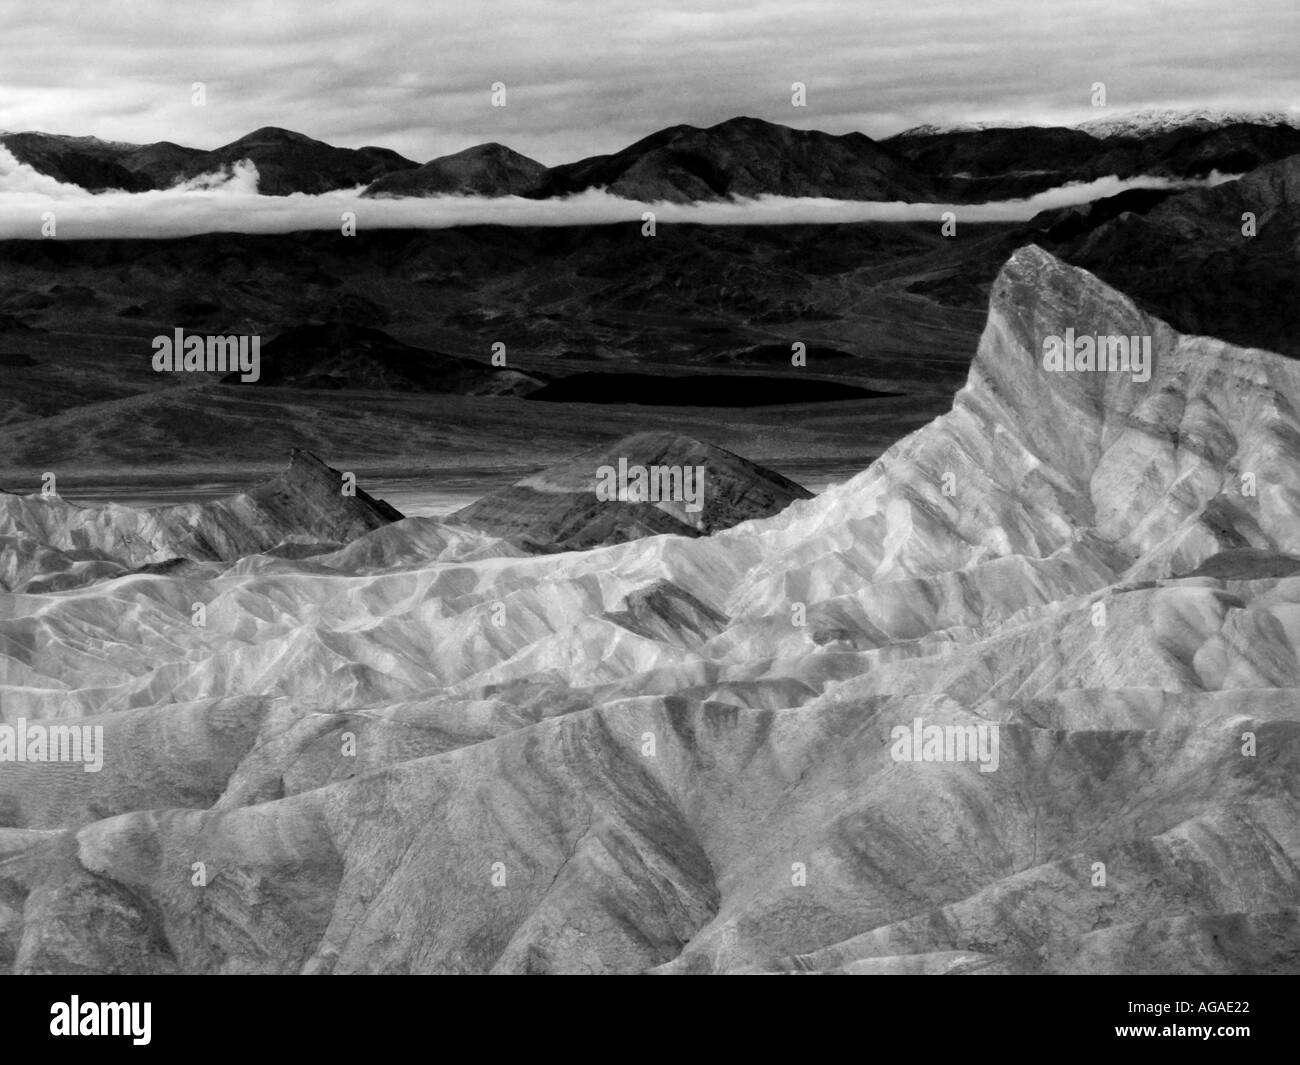 Kalifornien Death Valley National Park Zabriskiie Punkt Manly Beacon nähert sich Sturm Stockfoto